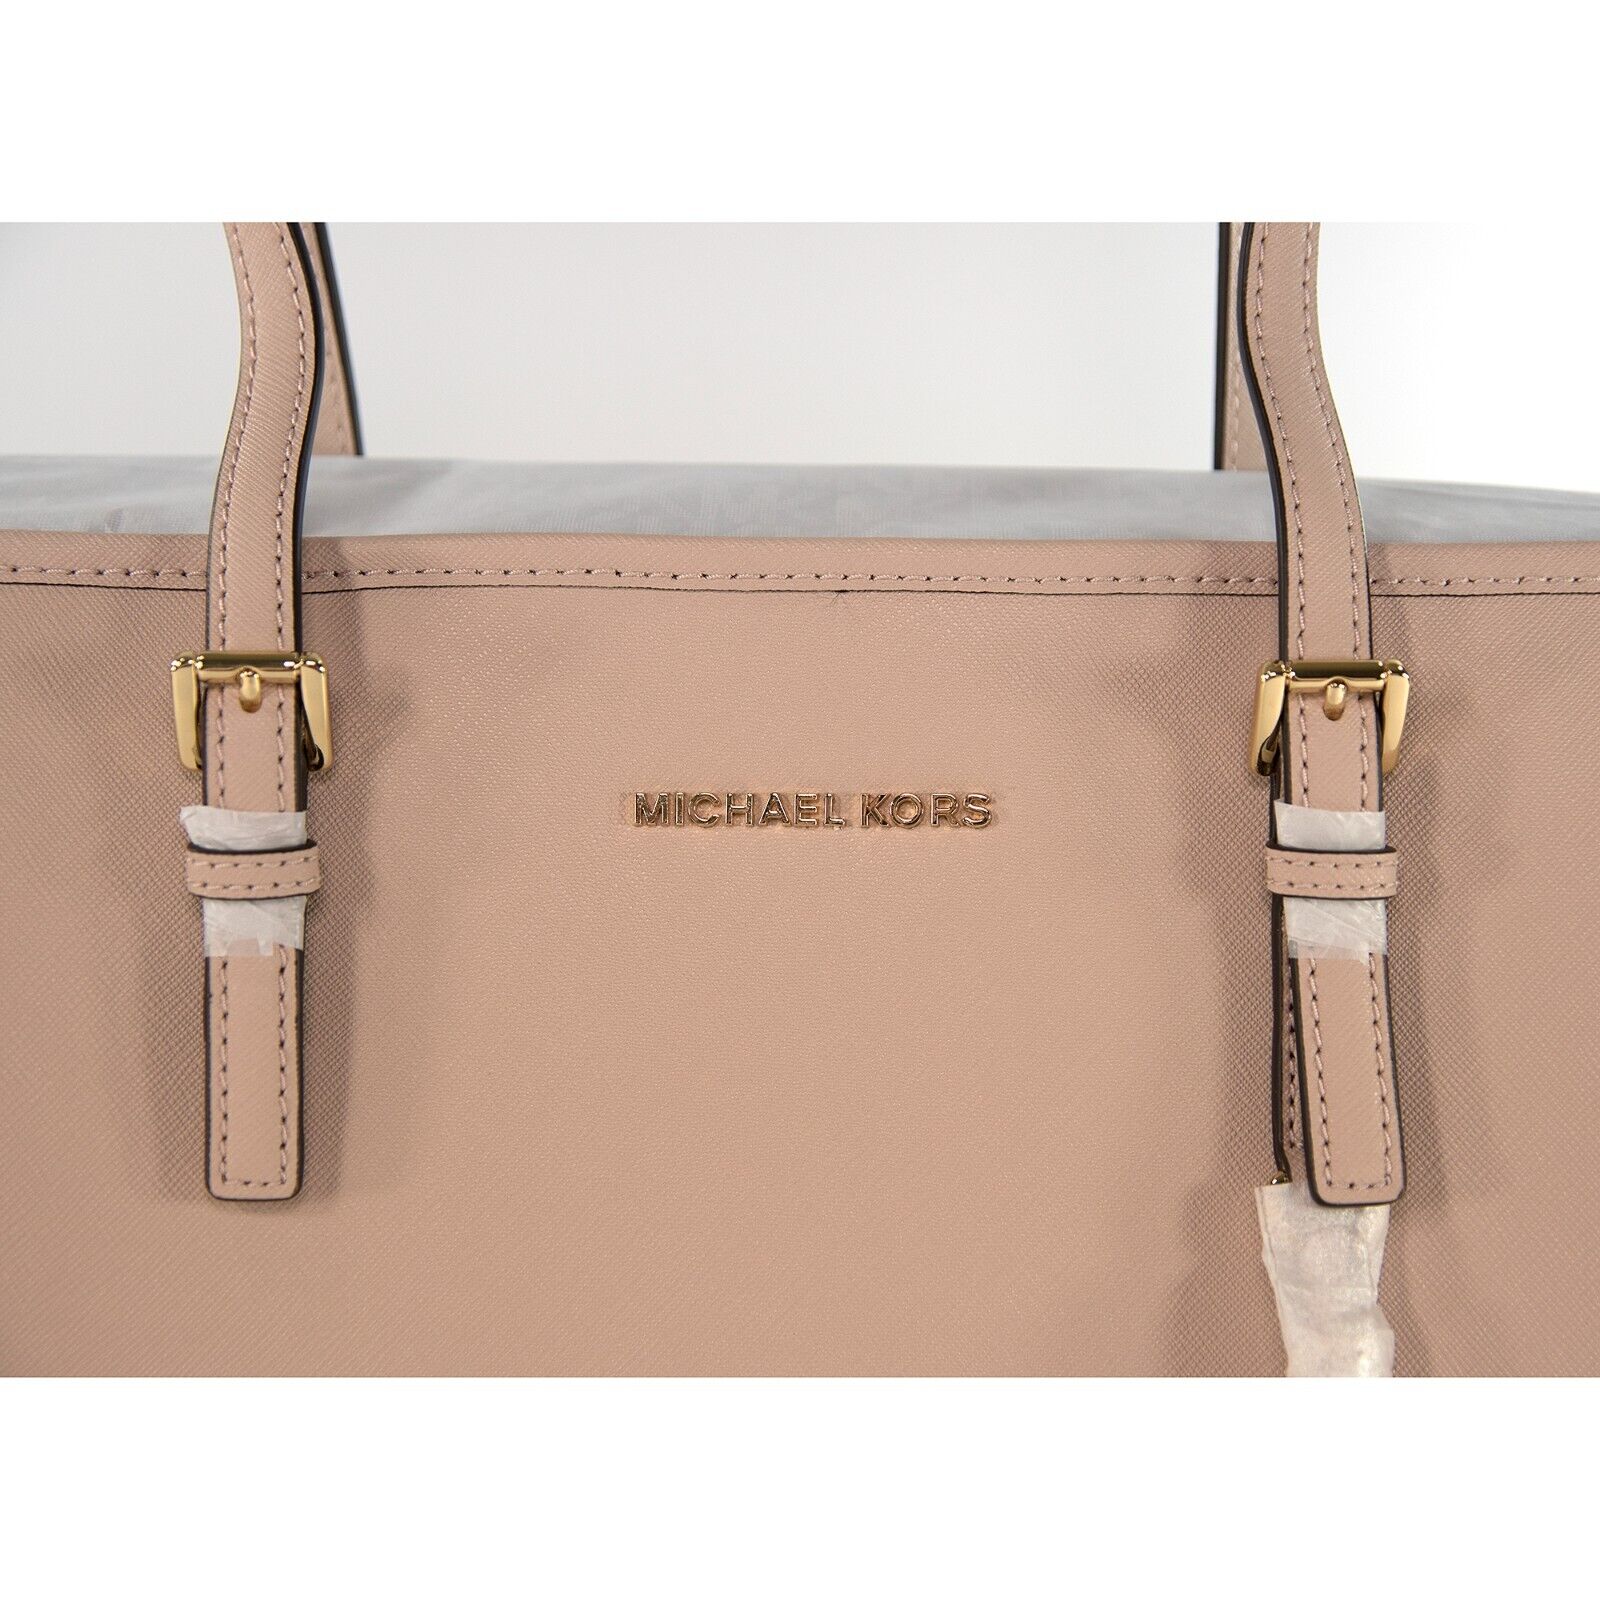 Women's Michael Kors Light Pink purse | eBay